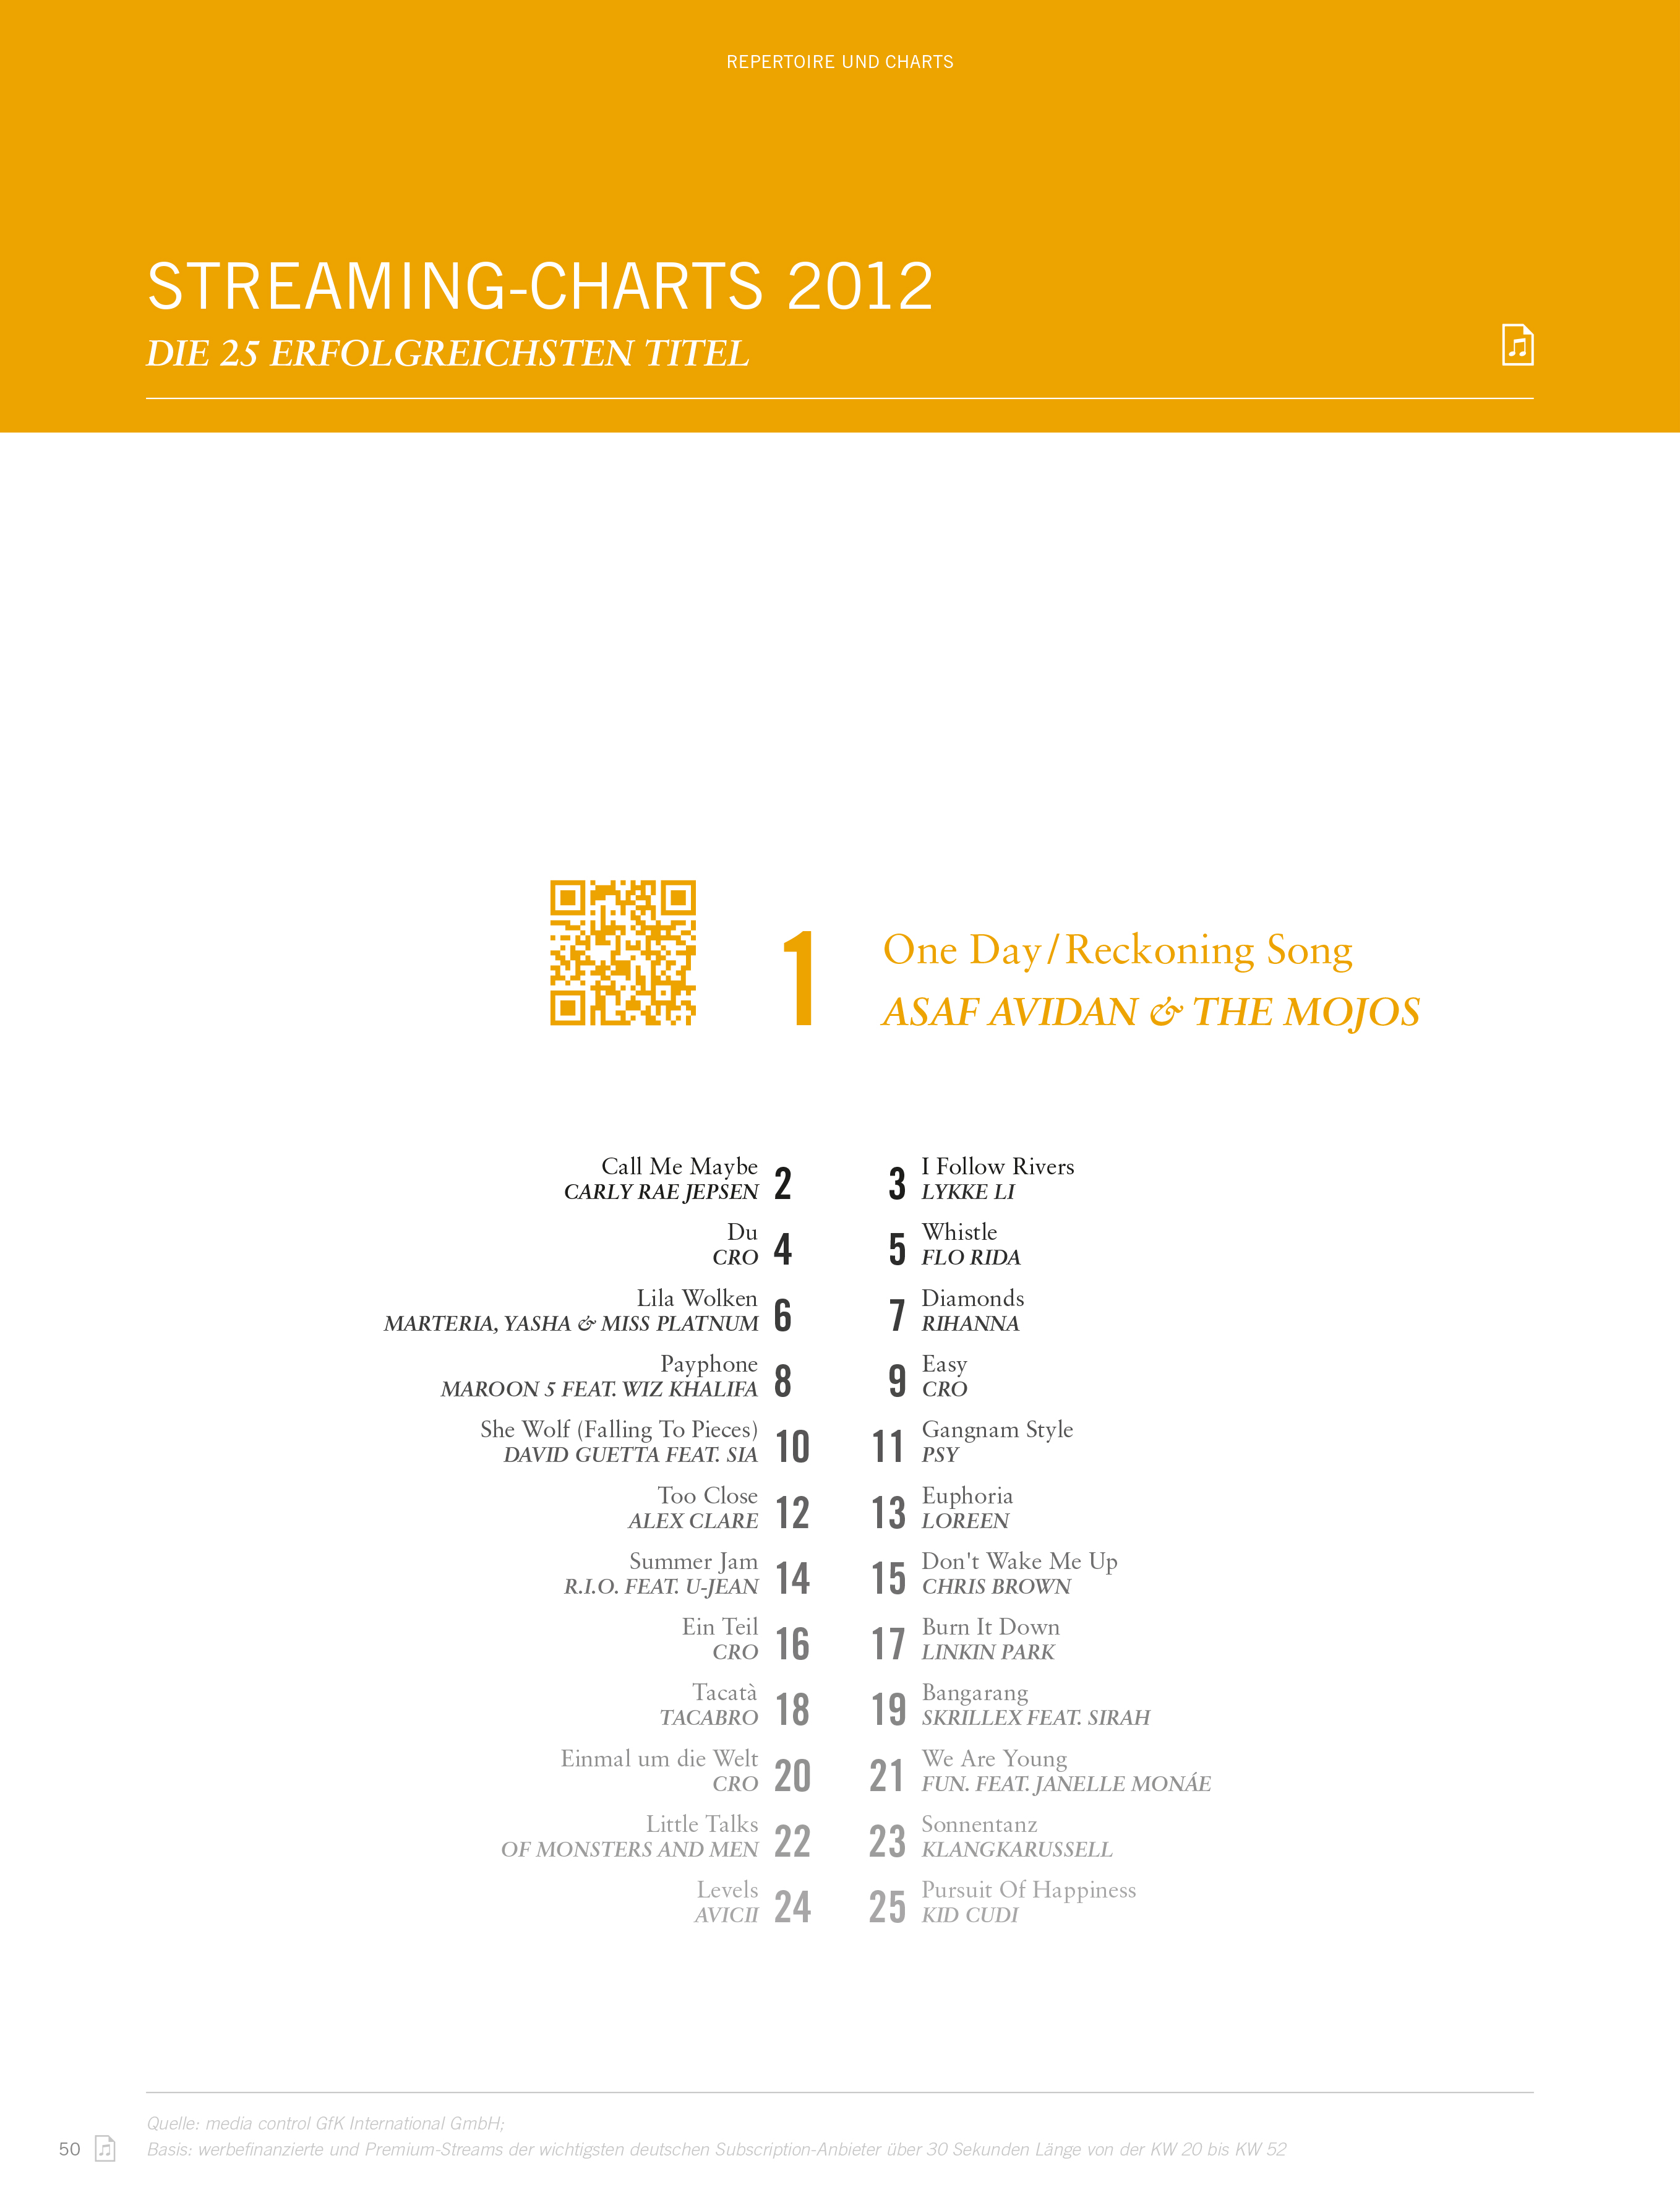 Charts 2010 Deutschland